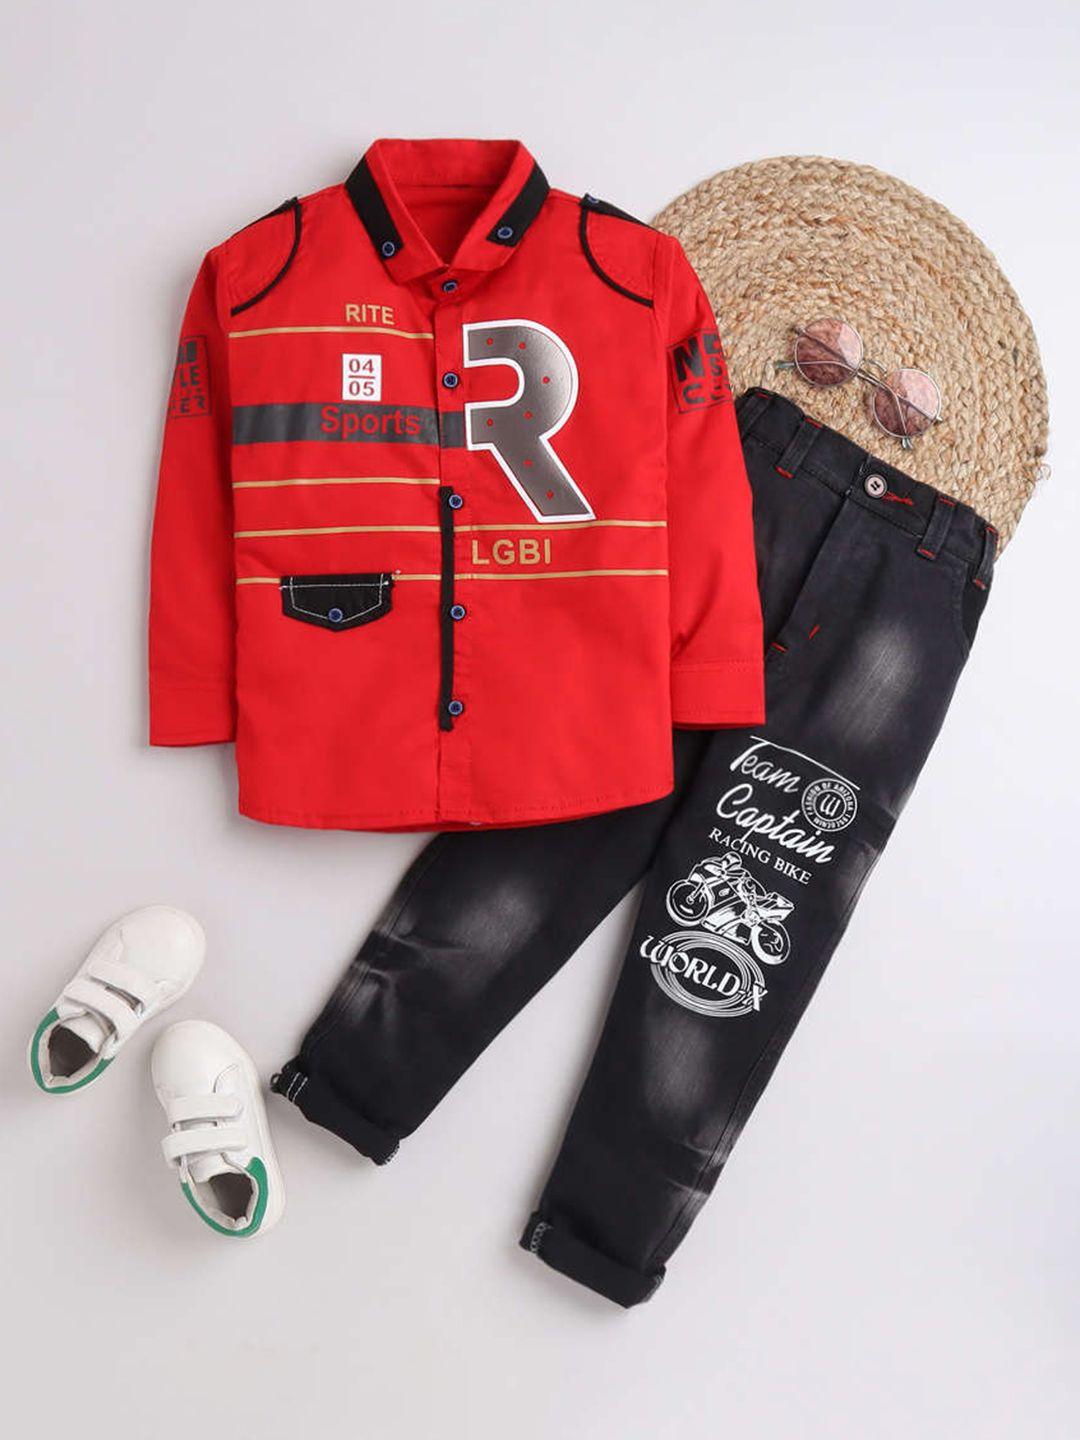 dkgf-fashion-boys-red-&-black-printed-clothing-set